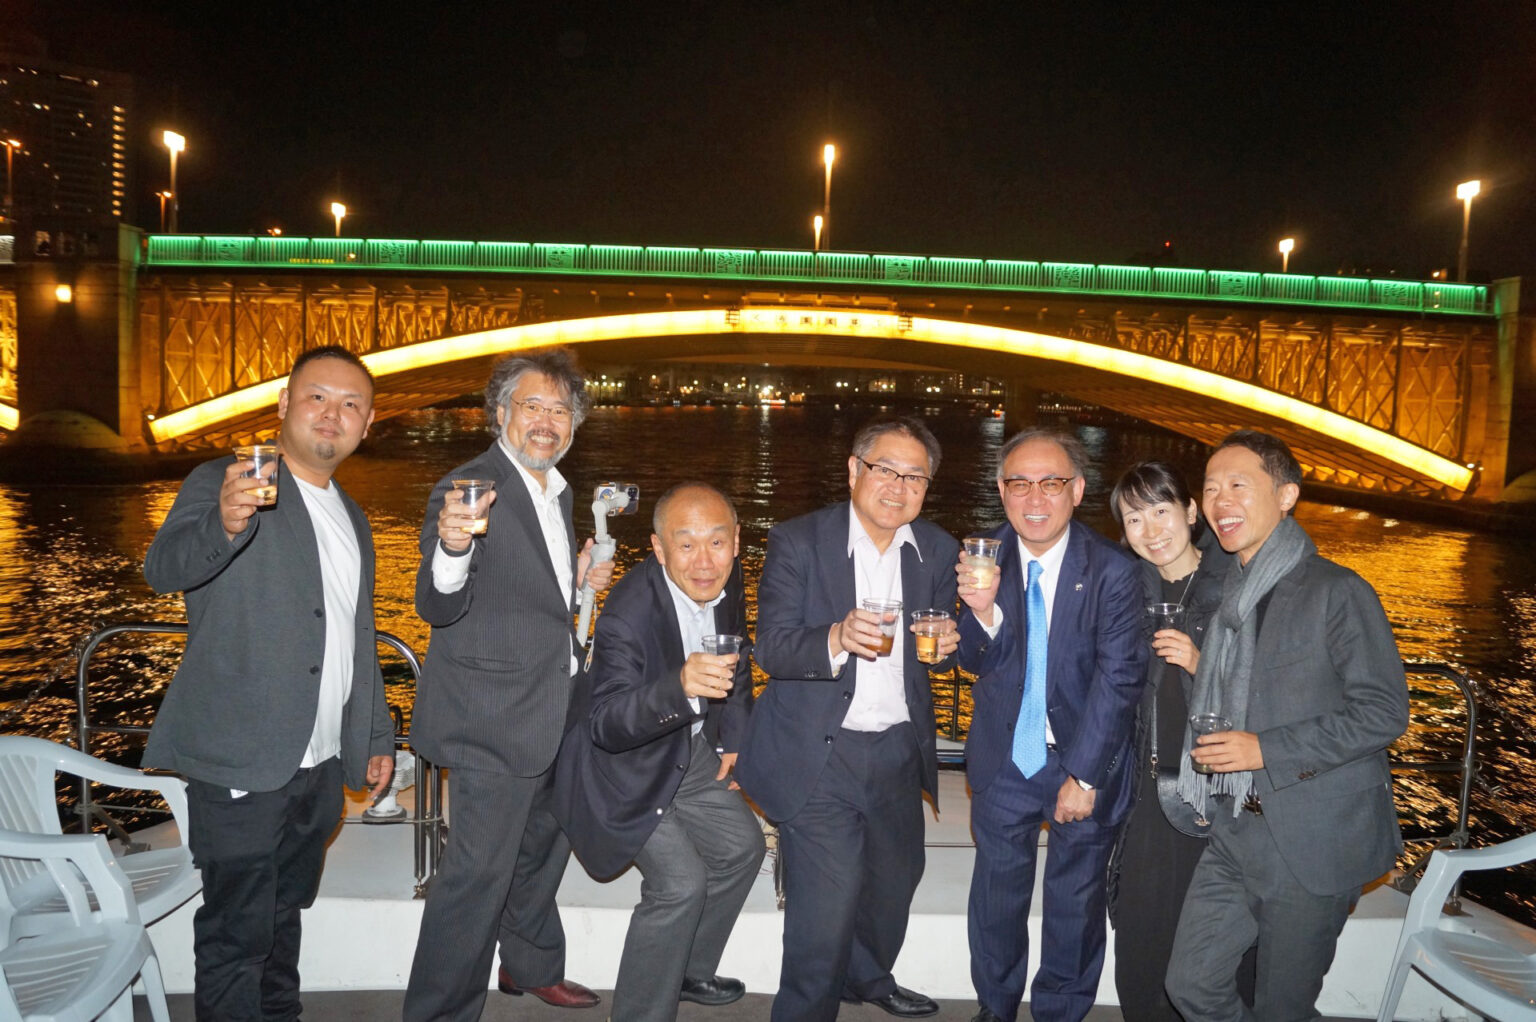 隅田川にかかる橋のライトアップとクルージングを楽しむ人たち